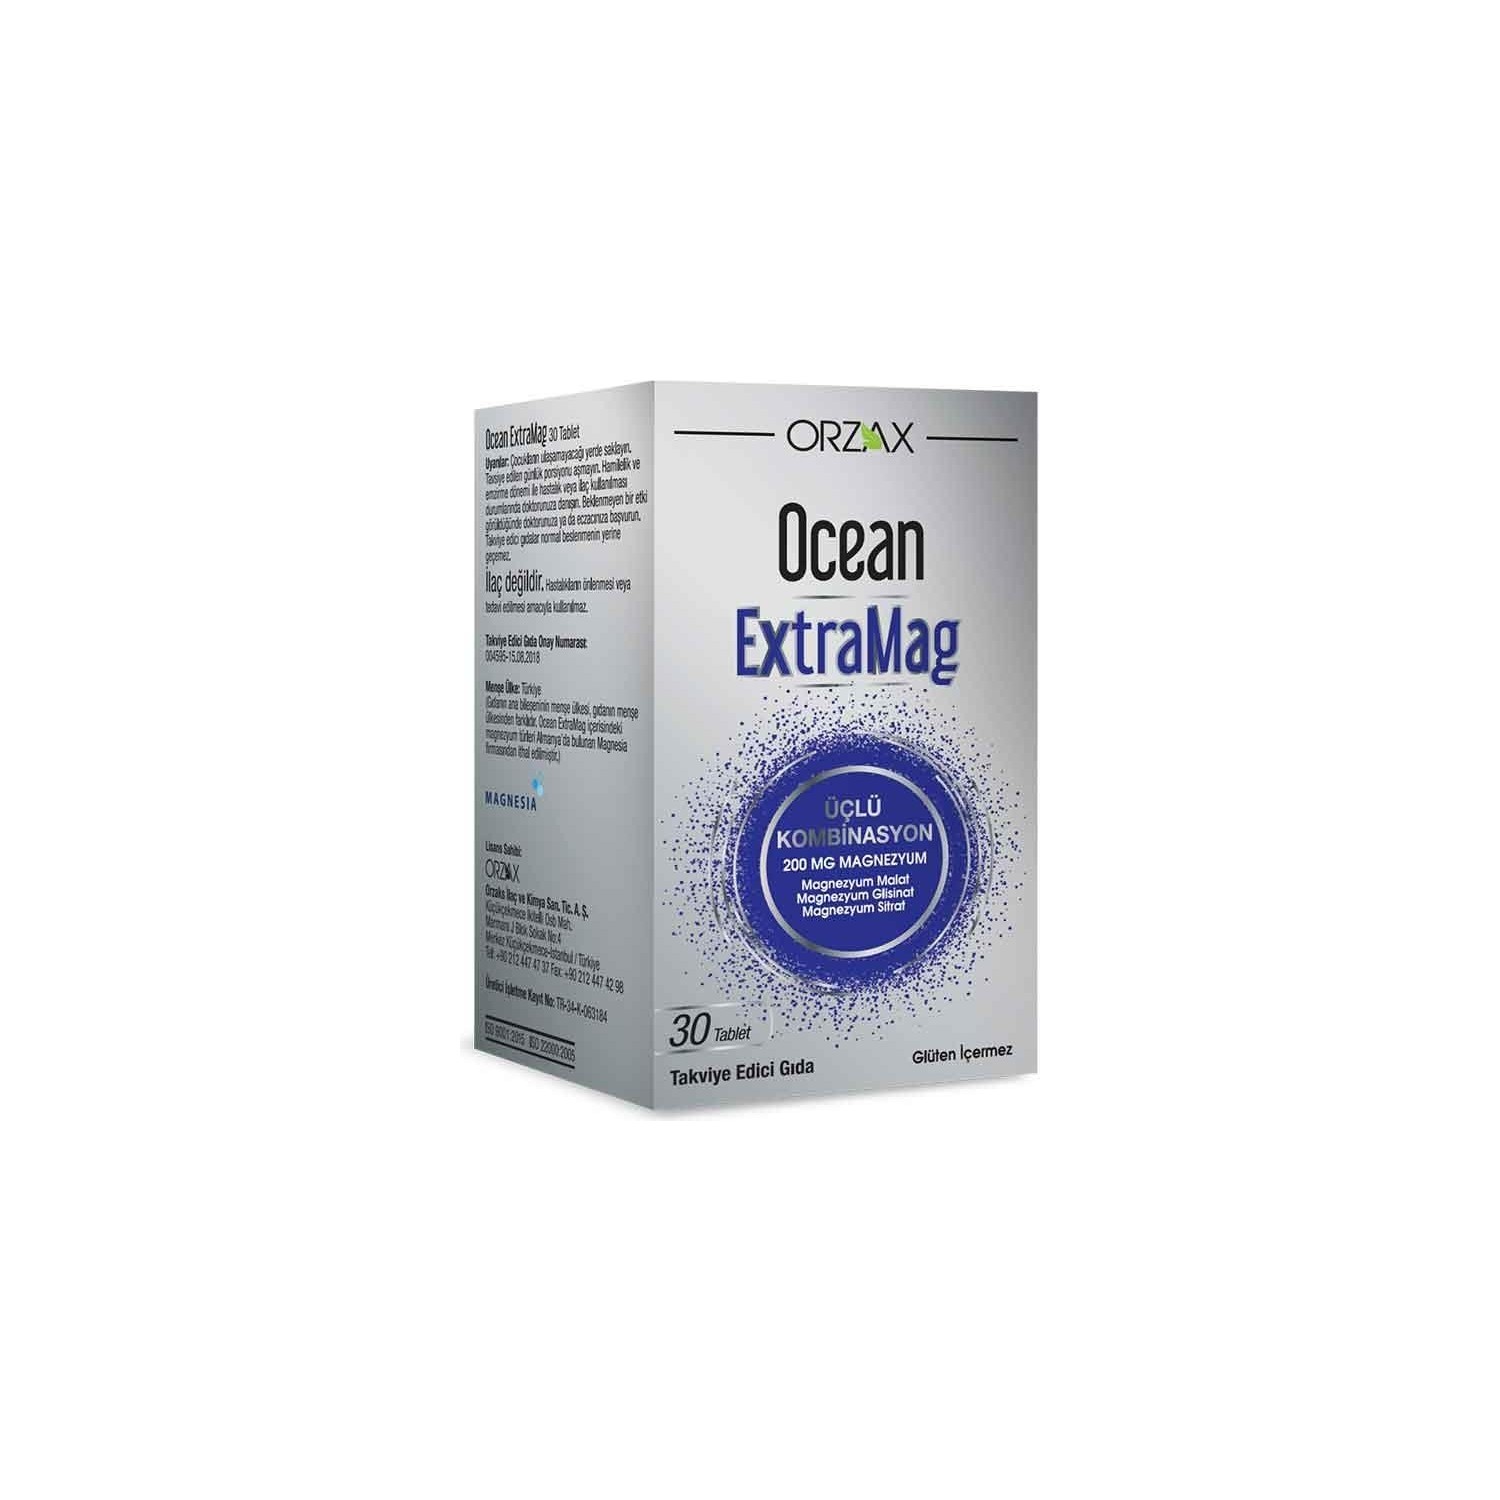 Комбинированная добавка Orzax Ocean Extramag Tip, 30 таблеток добавка селена ocean 100 мкг 30 таблеток